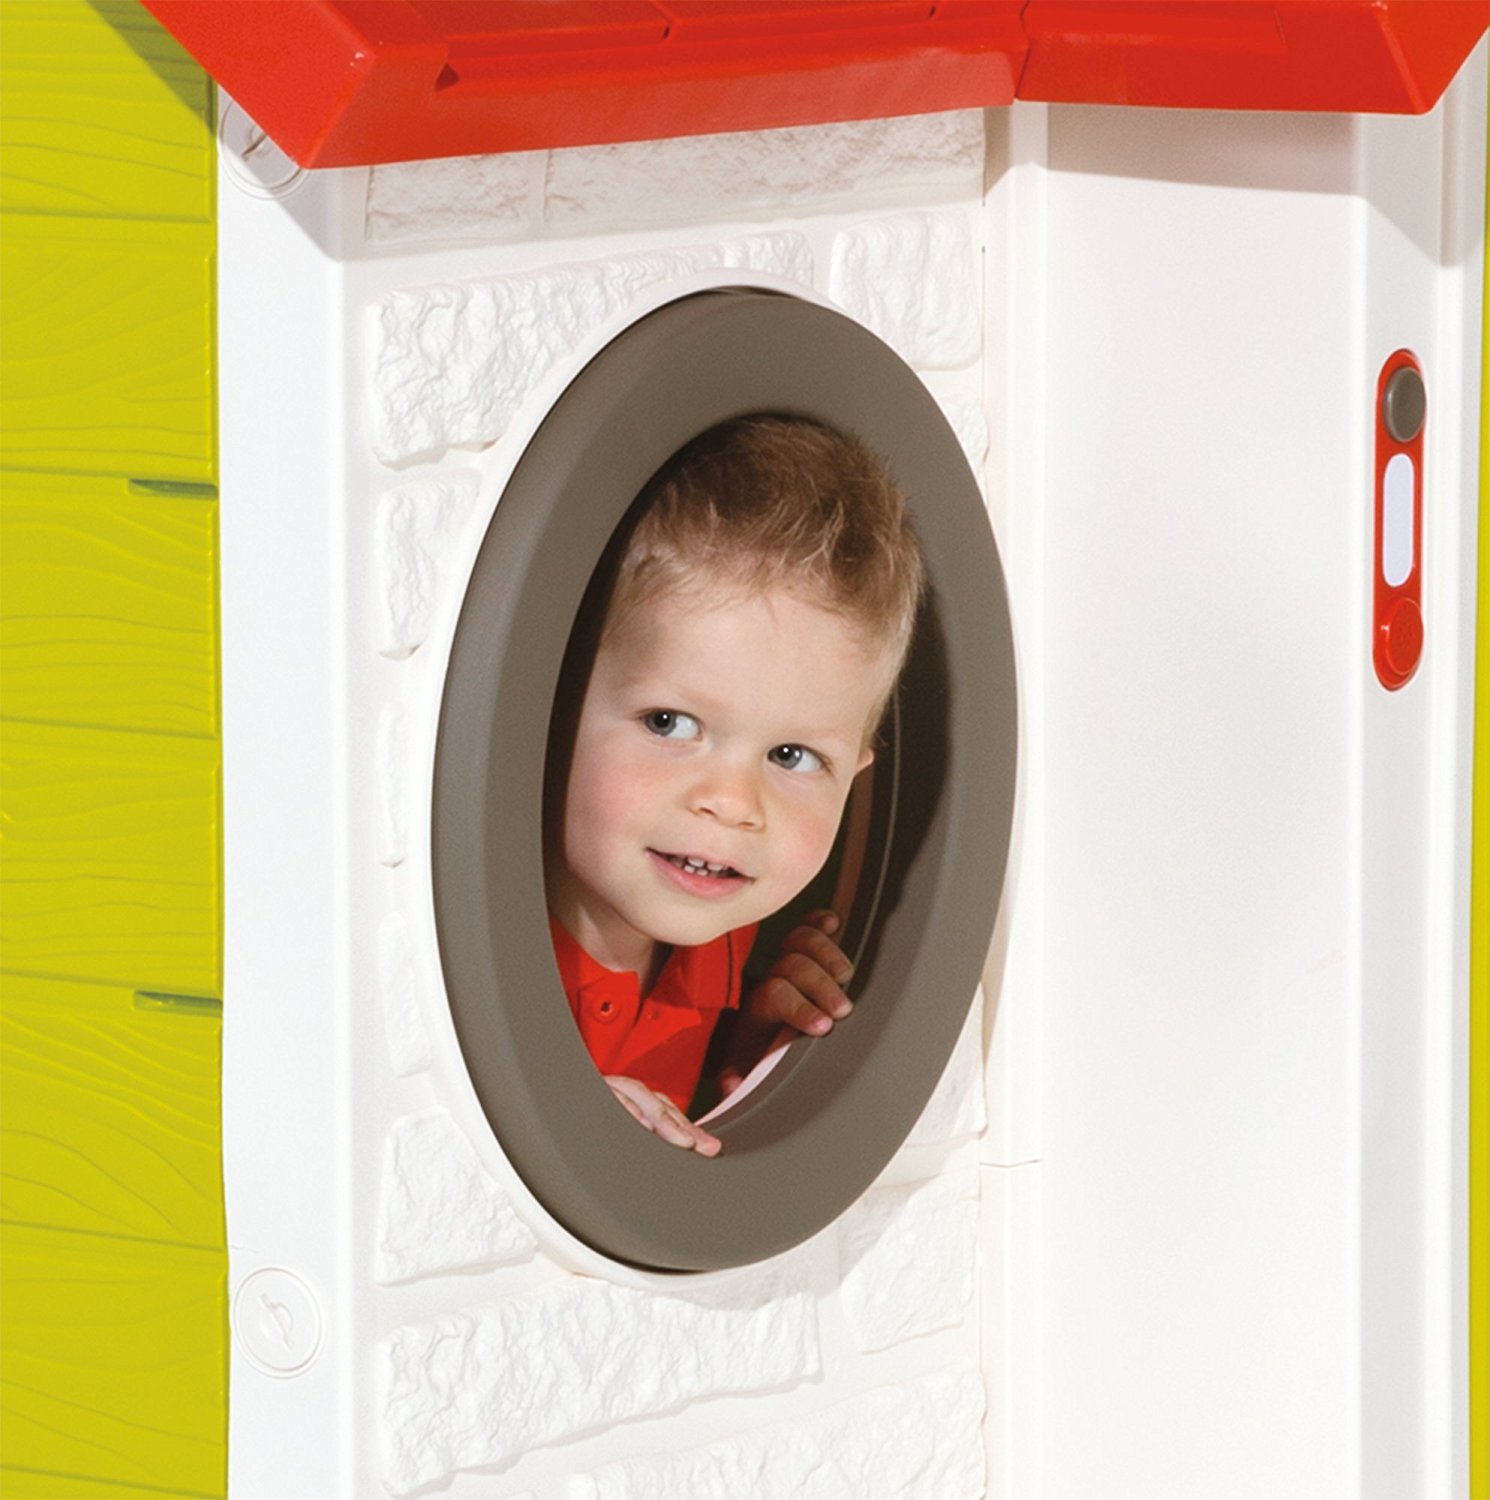 Игровой детский домик Smoby со звонком  